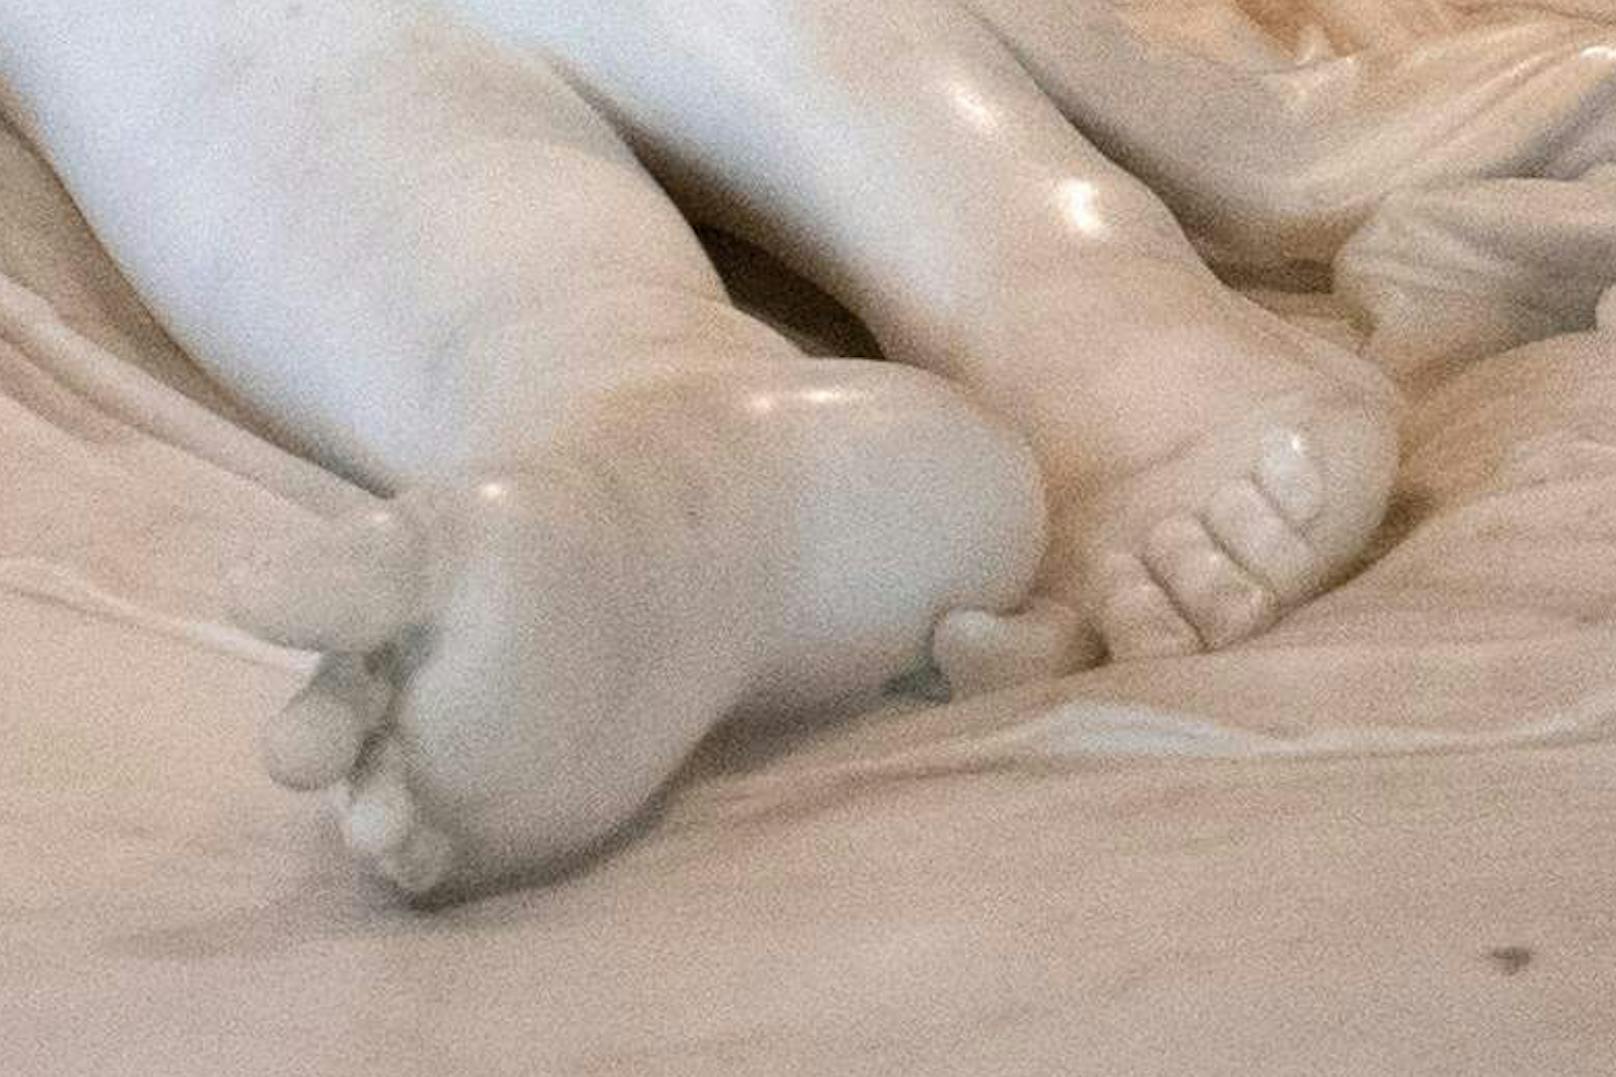 Paolina Bonaparte als siegende Venus. Marmor-Statue des italienischen Bildhauers Antonio Canova (1757-1822). Das Original ist in Rom ausgestellt, das Gips-Modell im Maßstab 1:1 in Possagno